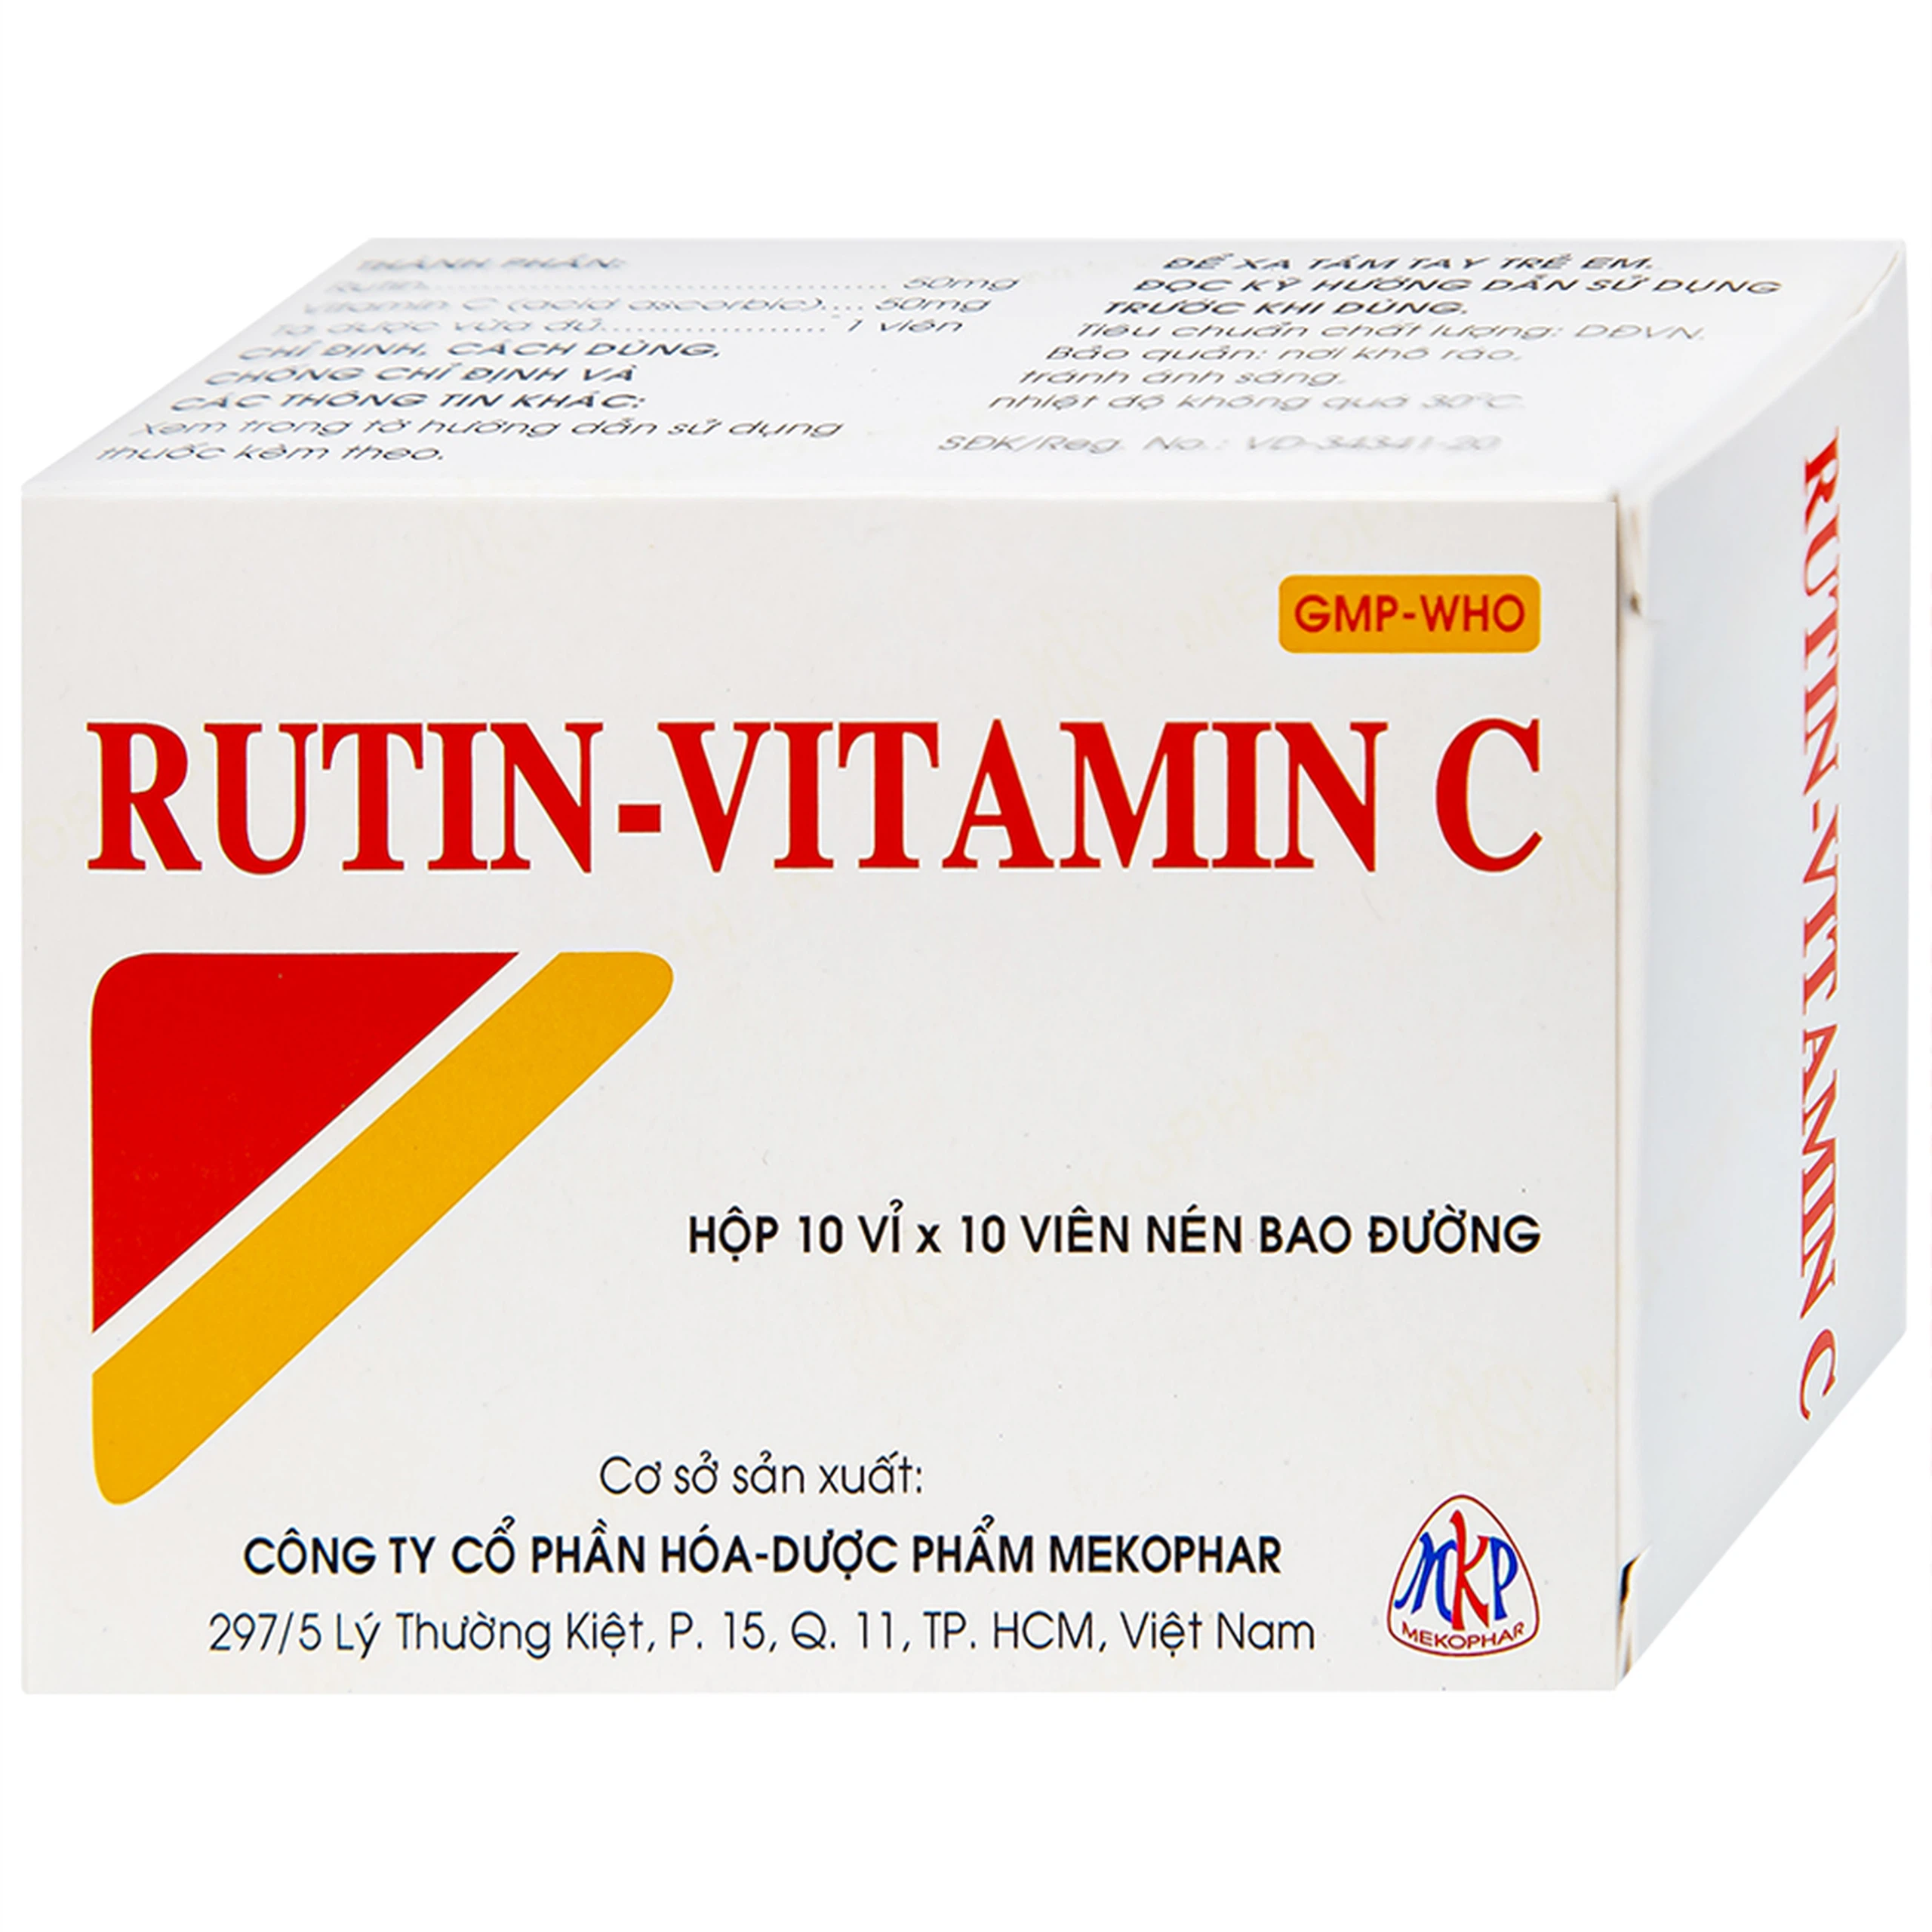 Thuốc Rutin-Vitamin C Mekophar hỗ trợ điều trị các hội chứng chảy máu, xơ cứng (10 vỉ x 10 viên)